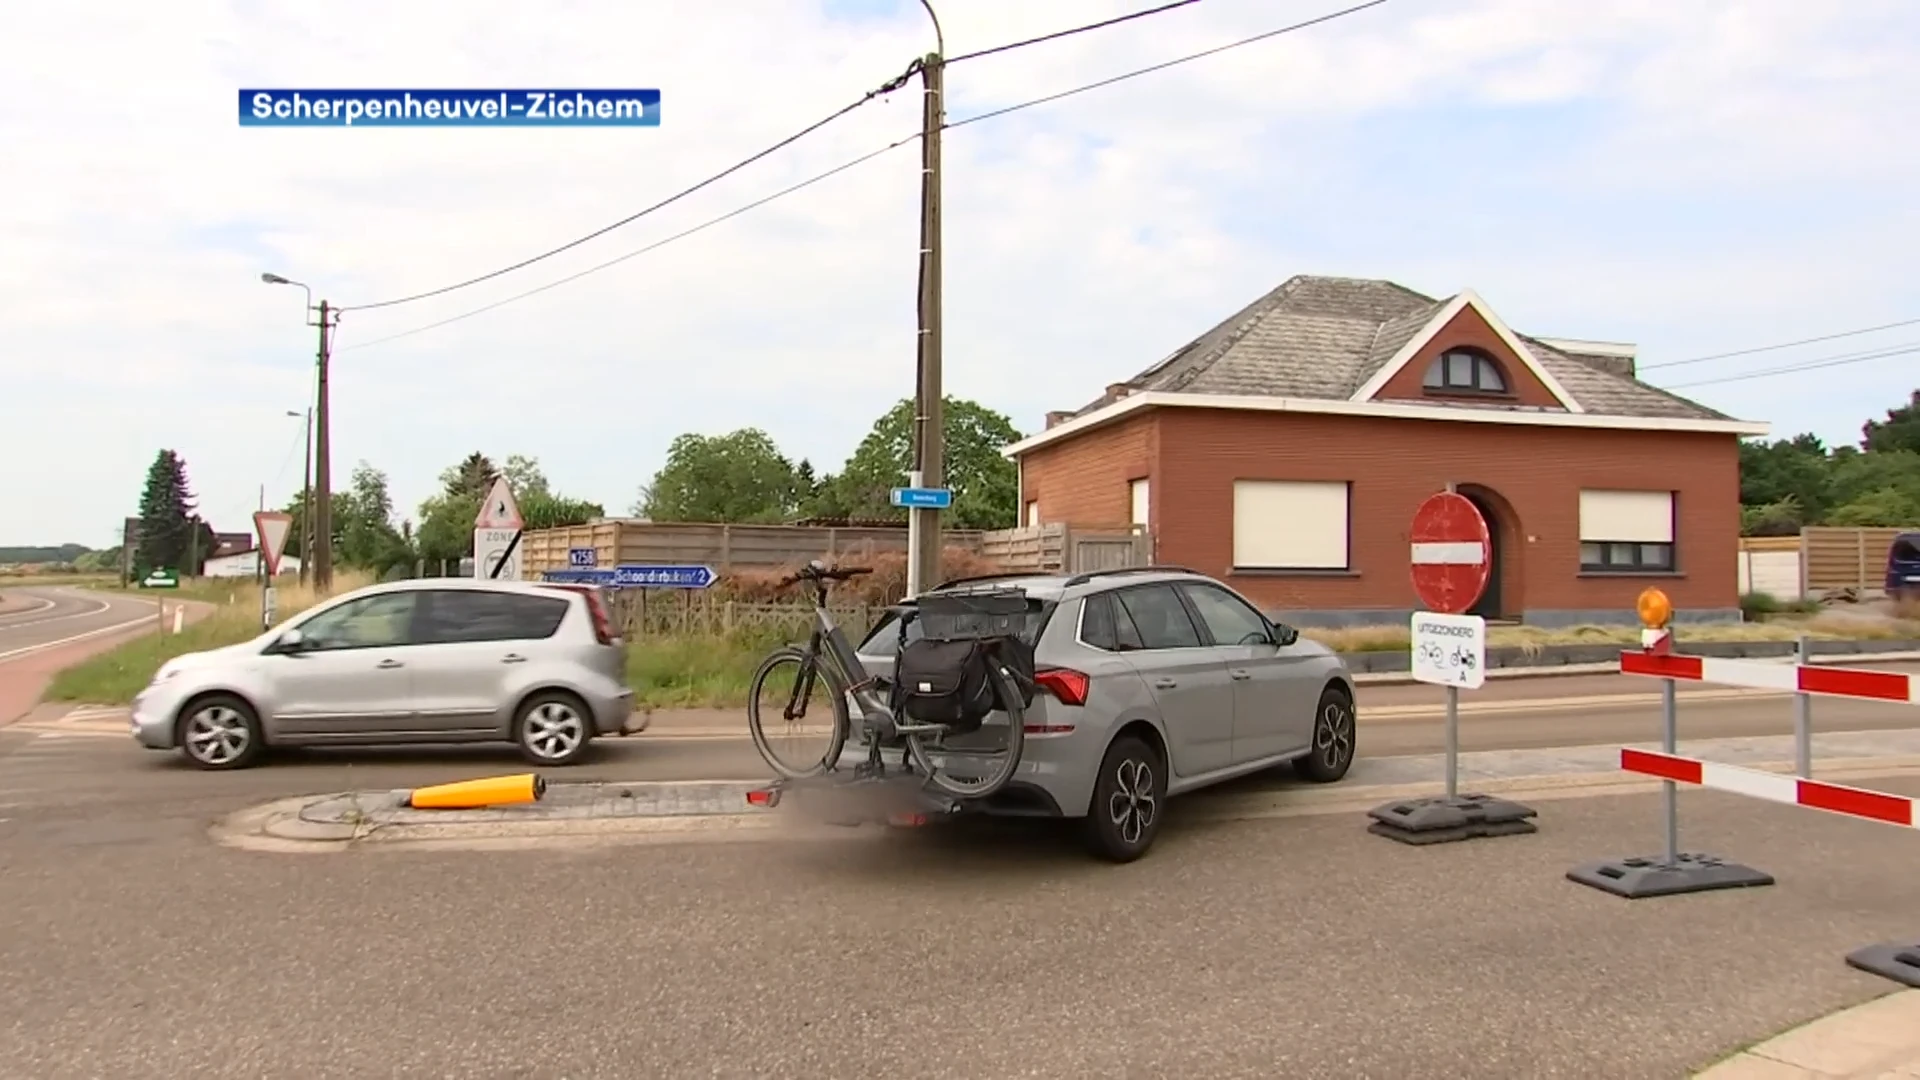 Wegenwerken in Scherpenheuvel-Zichem: aantal klachten, verkeersovertredingen en boetes niet bij te houden